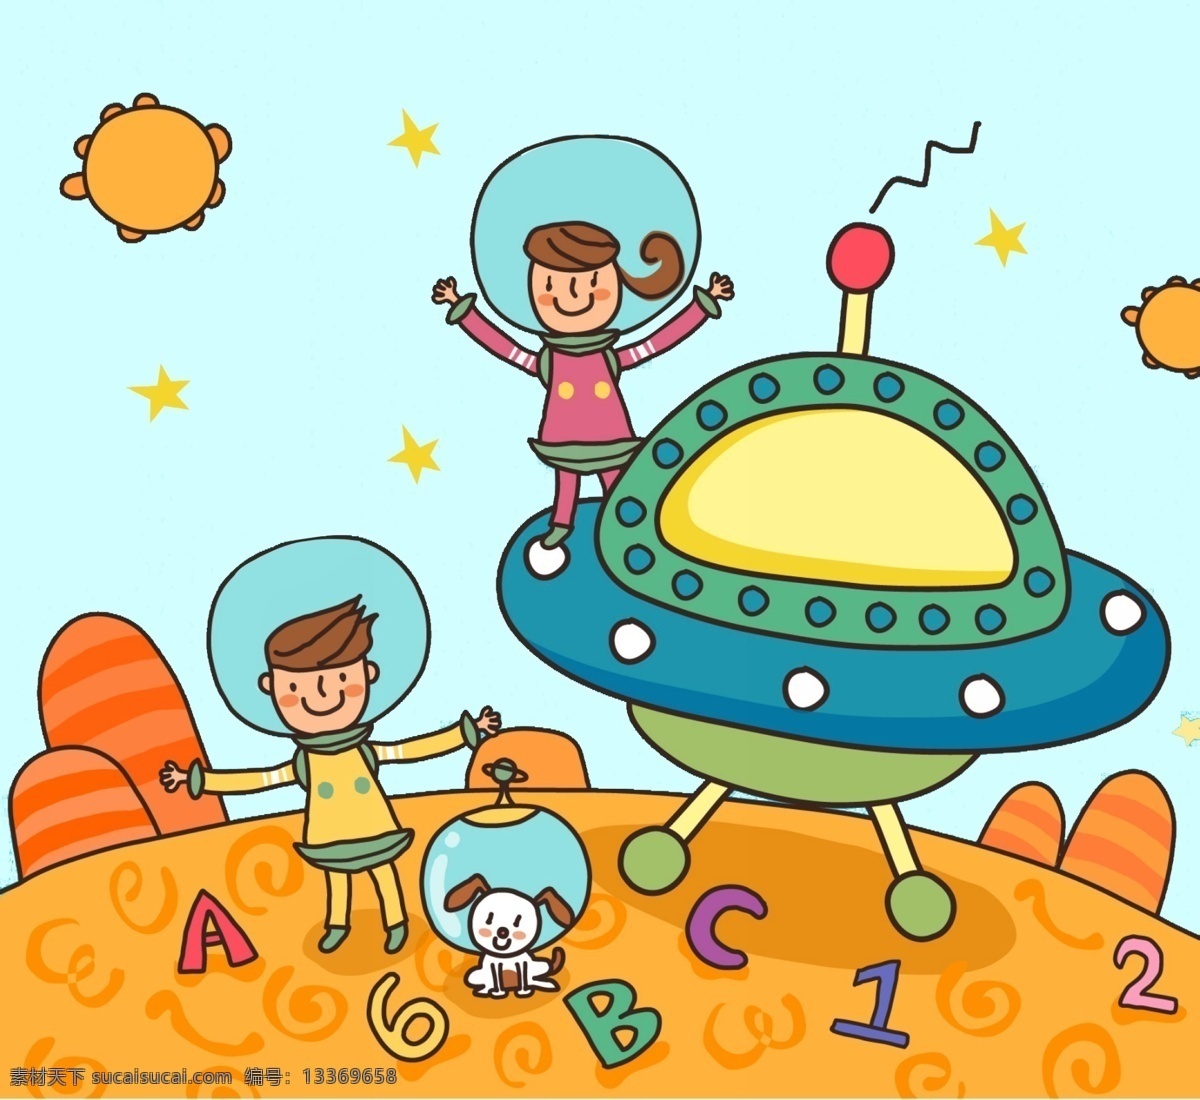 动漫 动画 图案 漫画 手绘 插画 彩绘 可爱 卡通人物 地球 儿童画 外星人 字母 家园 数字 太阳 橙色 男孩 女孩 卡通